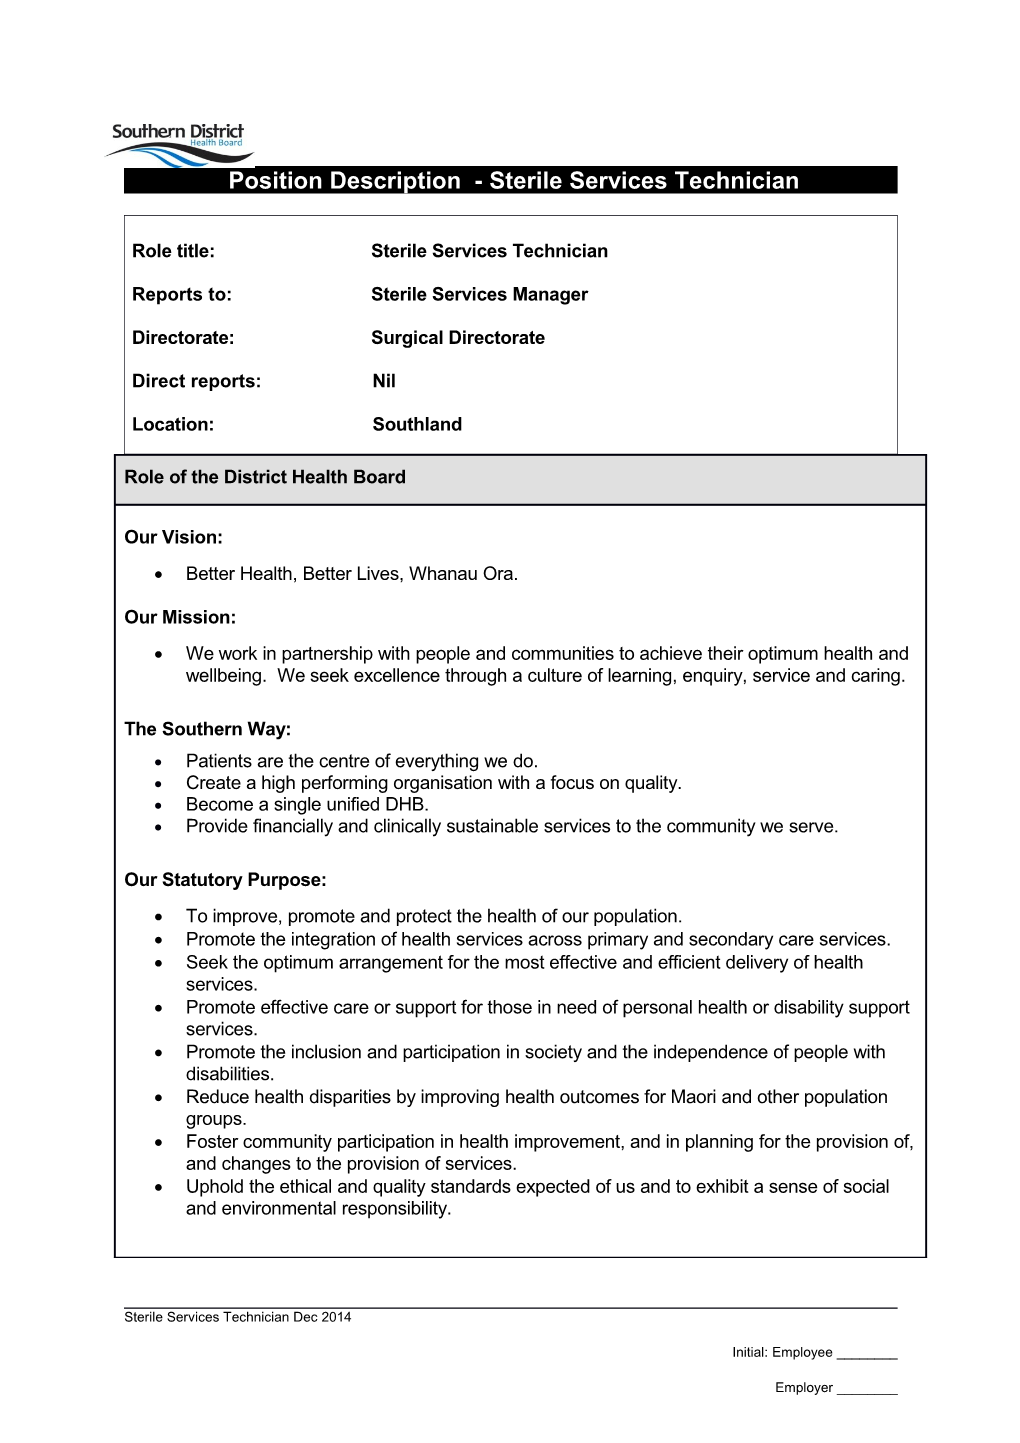 Position Description - Sterile Services Technician